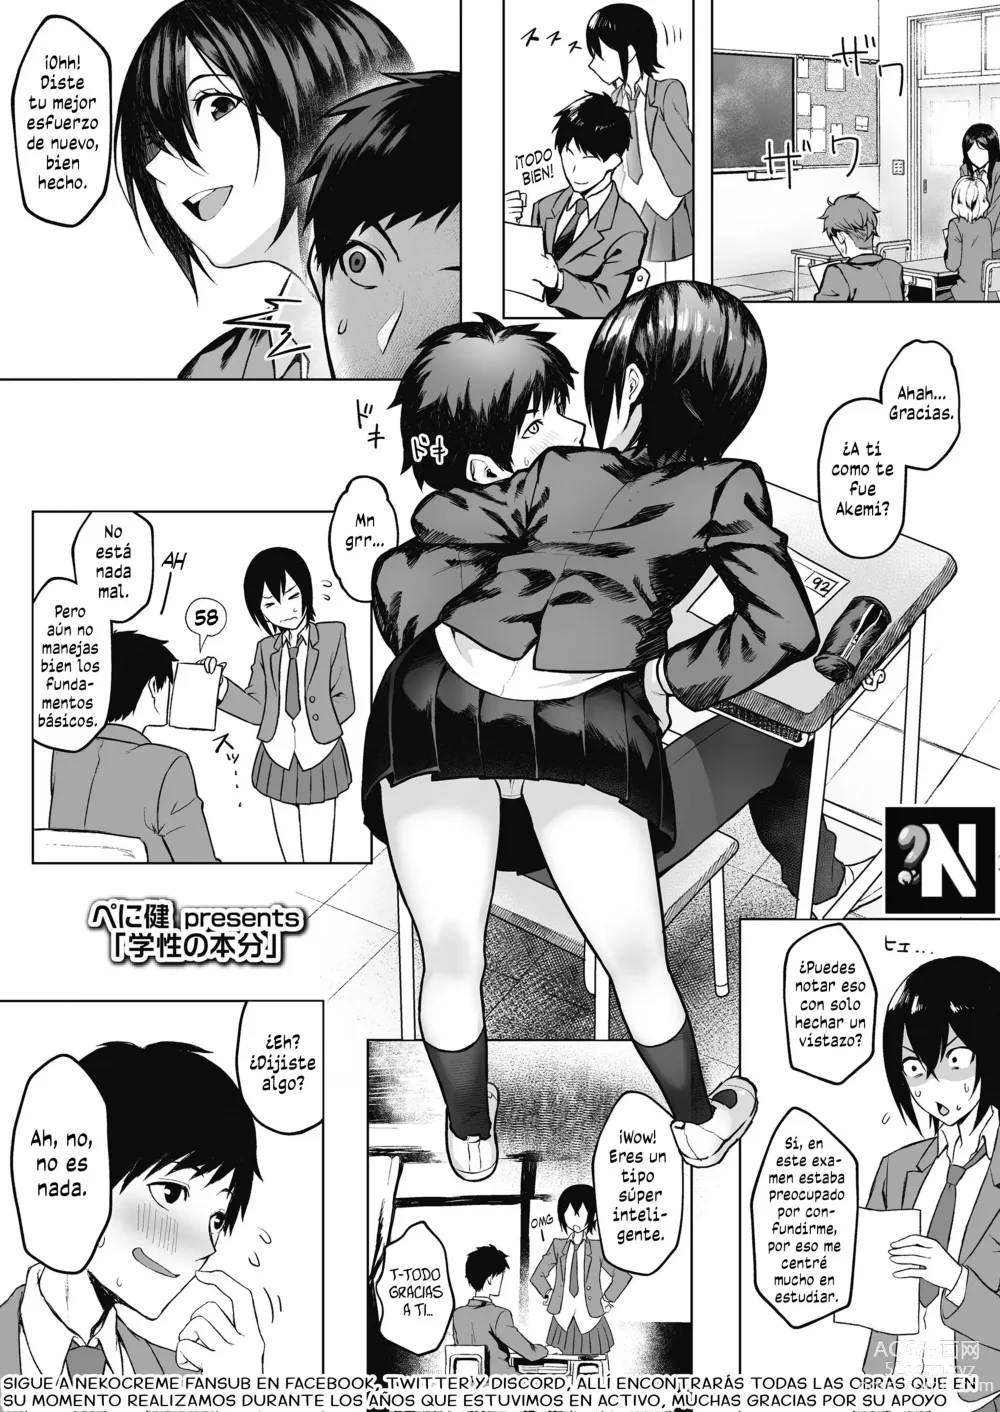 Page 1 of manga Buscando Ayuda en Ero-Educación